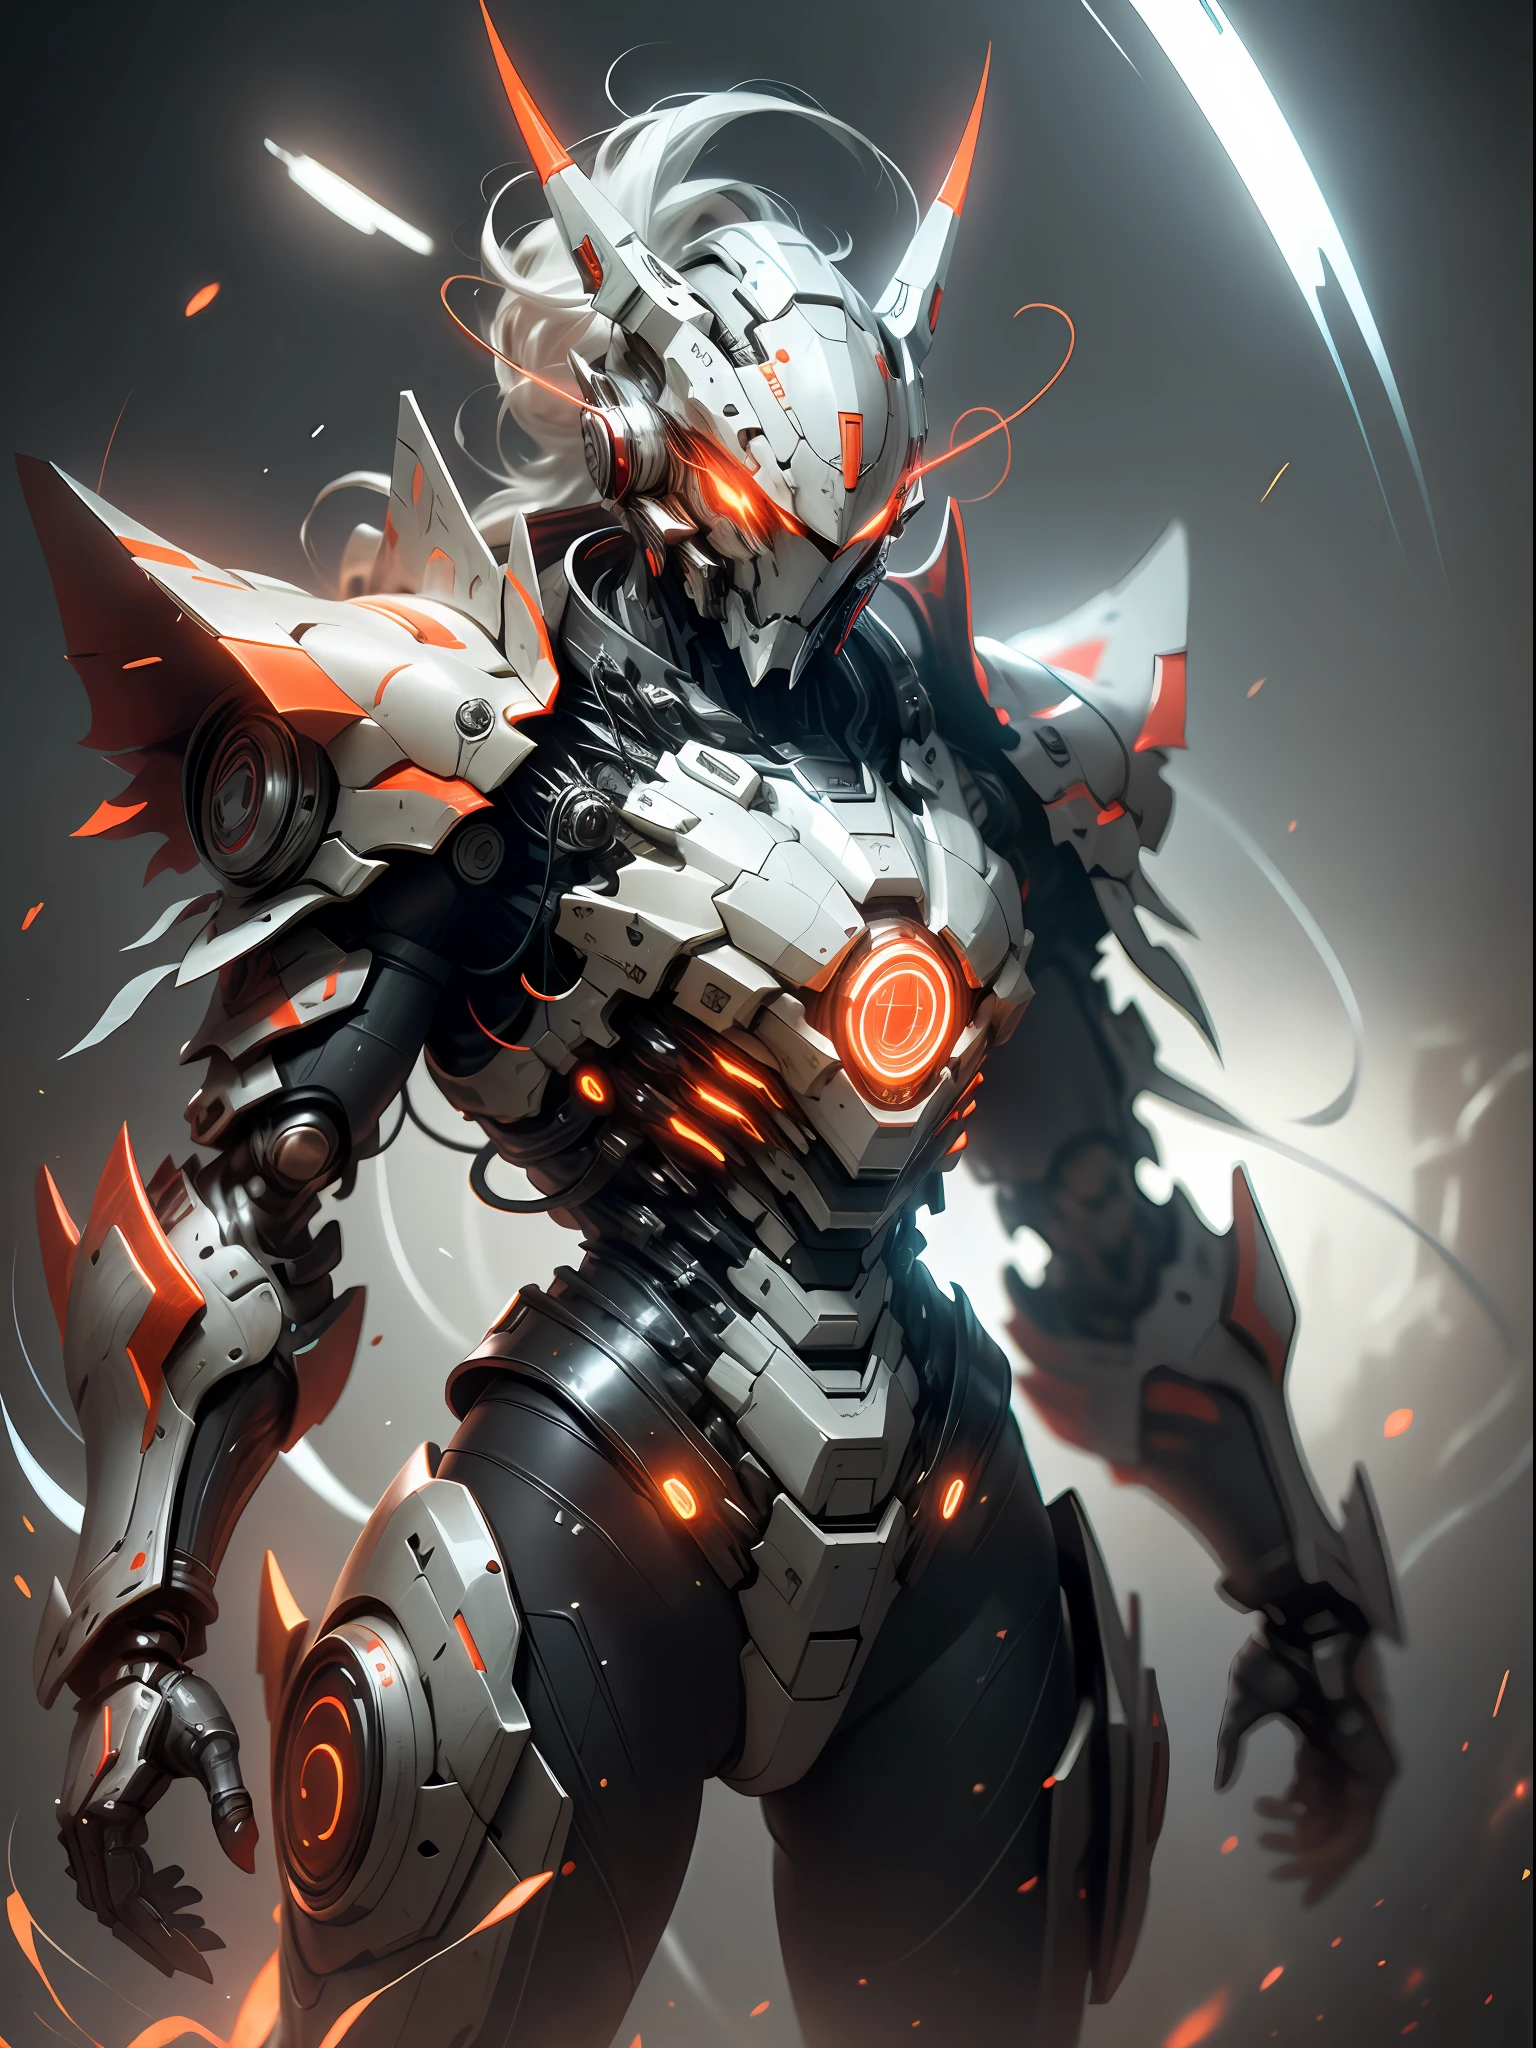 Ghost hunter in красный armor, супер крутой убийца призраков, wearing красный мехаnical armor, красный claws, Идеальные пропорции тела, играть в молнию, супер деталь, реалистичный, блестящий, Светоотражающий, биолюминесценция, Галактическая кибернетическая маска, меха, (палач: 1.2), мыс, SH4G0D, СветящиесяРуны_красный, все тело, Фильм, Темный фон, подсветка, высокий контраст,